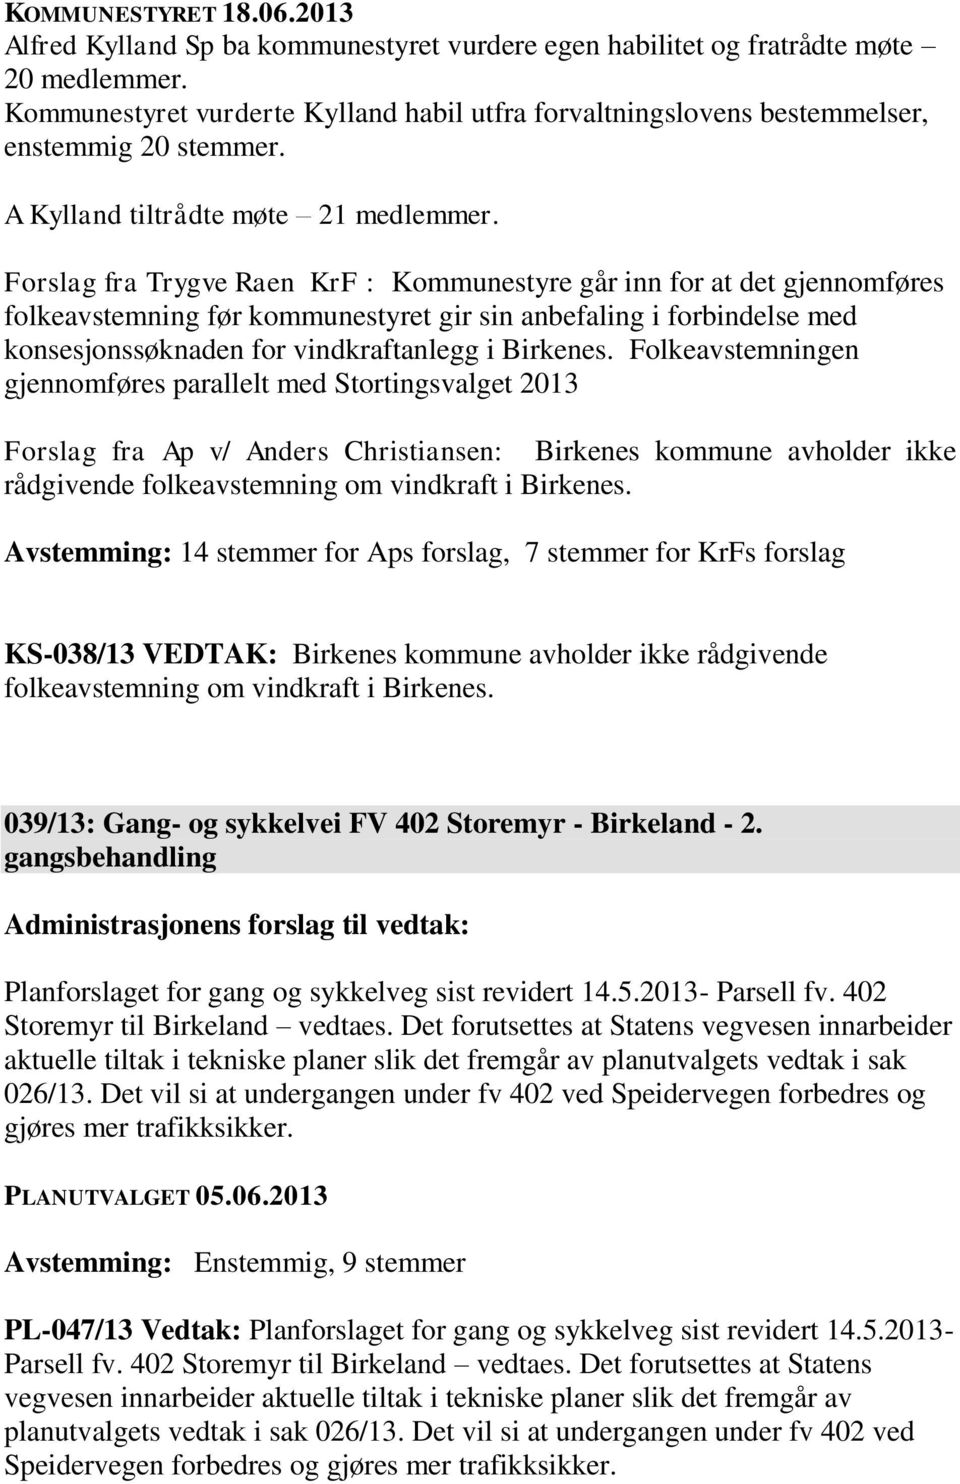 Forslag fra Trygve Raen KrF : Kommunestyre går inn for at det gjennomføres folkeavstemning før kommunestyret gir sin anbefaling i forbindelse med konsesjonssøknaden for vindkraftanlegg i Birkenes.